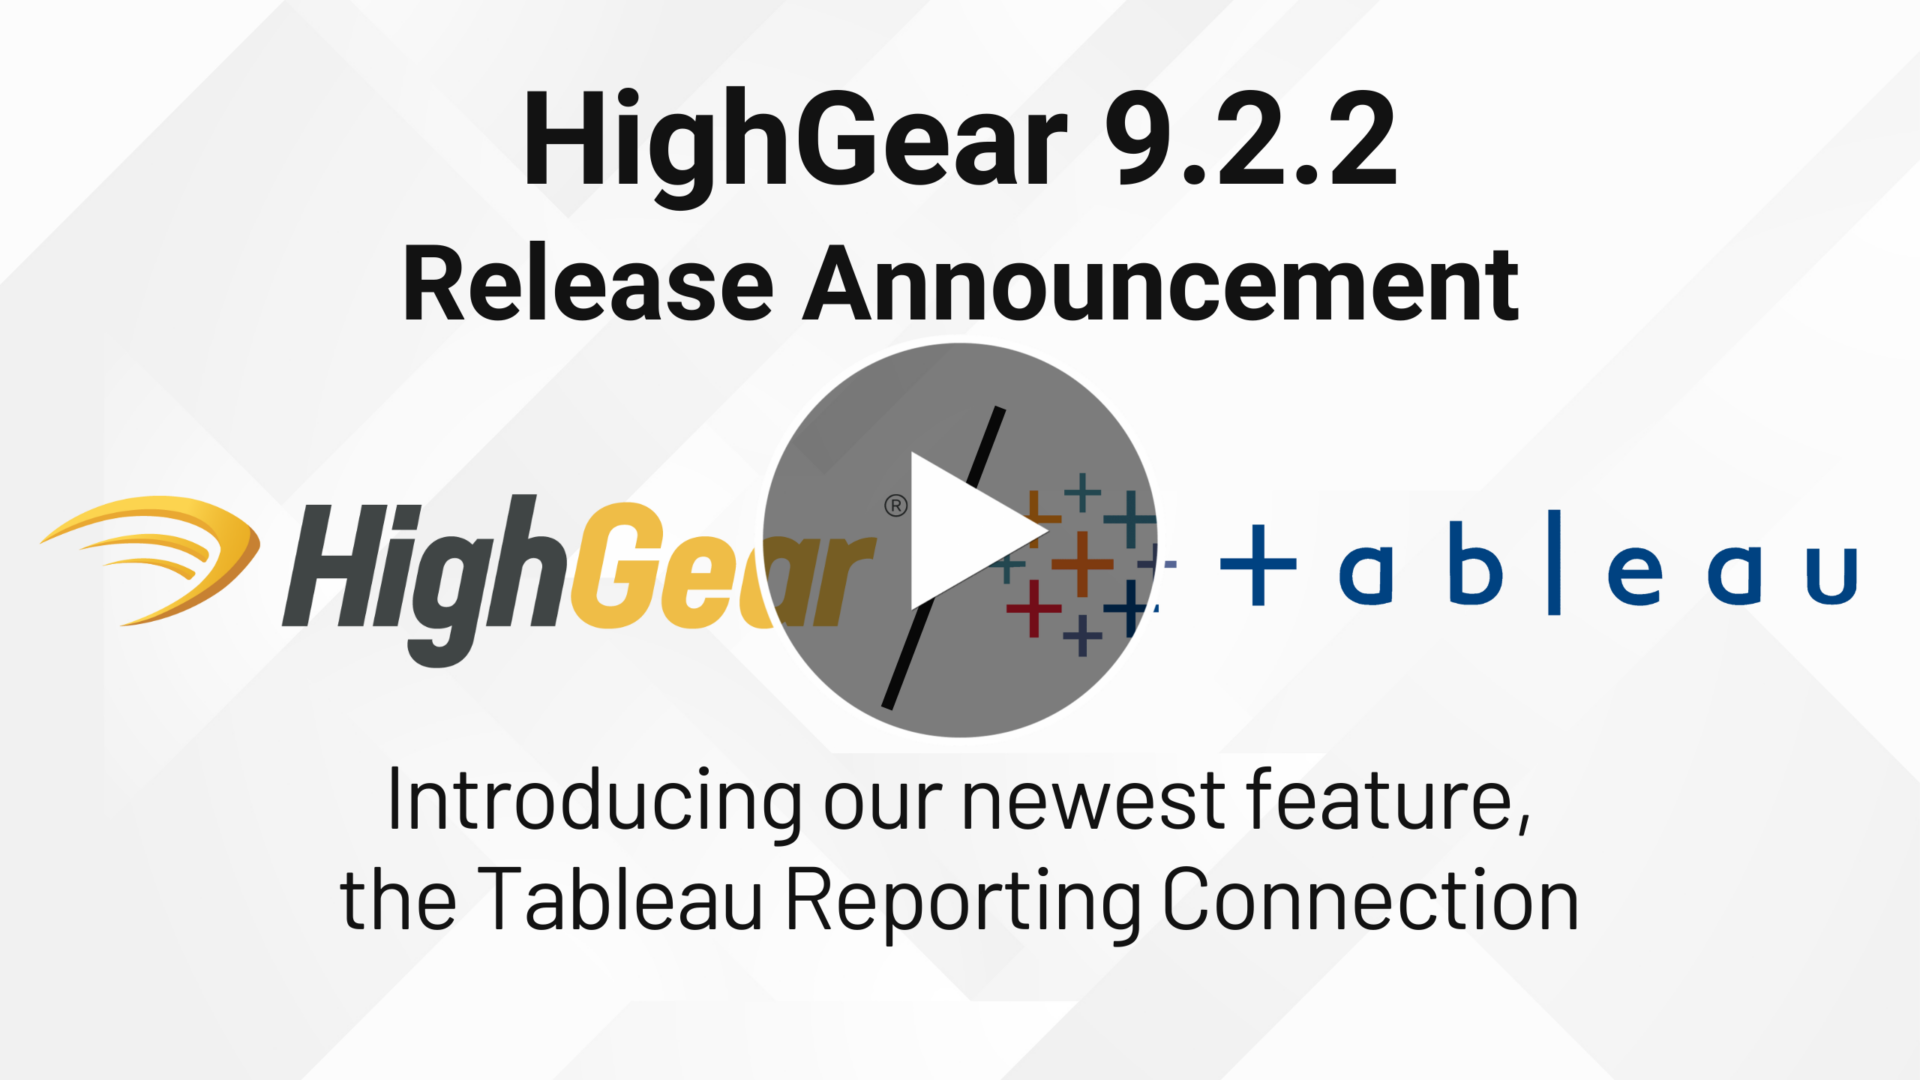 HighGear 9.2.2 Release Video